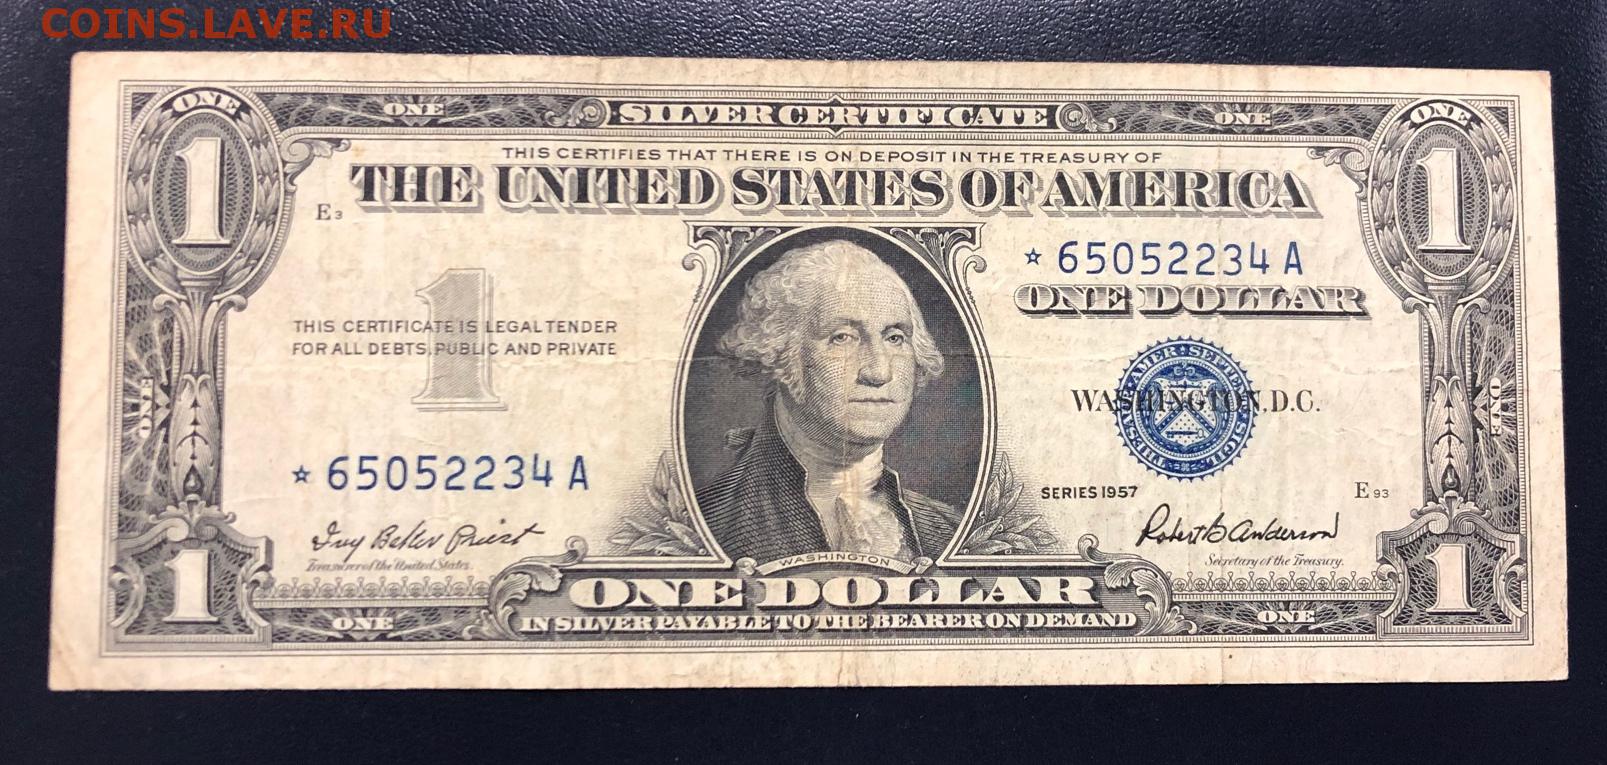 Сколько т доллар. Банкнота 1 доллар США. Долларовая купюра 1 доллар. Американская купюра 1 доллар. Как выглядит 1 доллар США купюра.